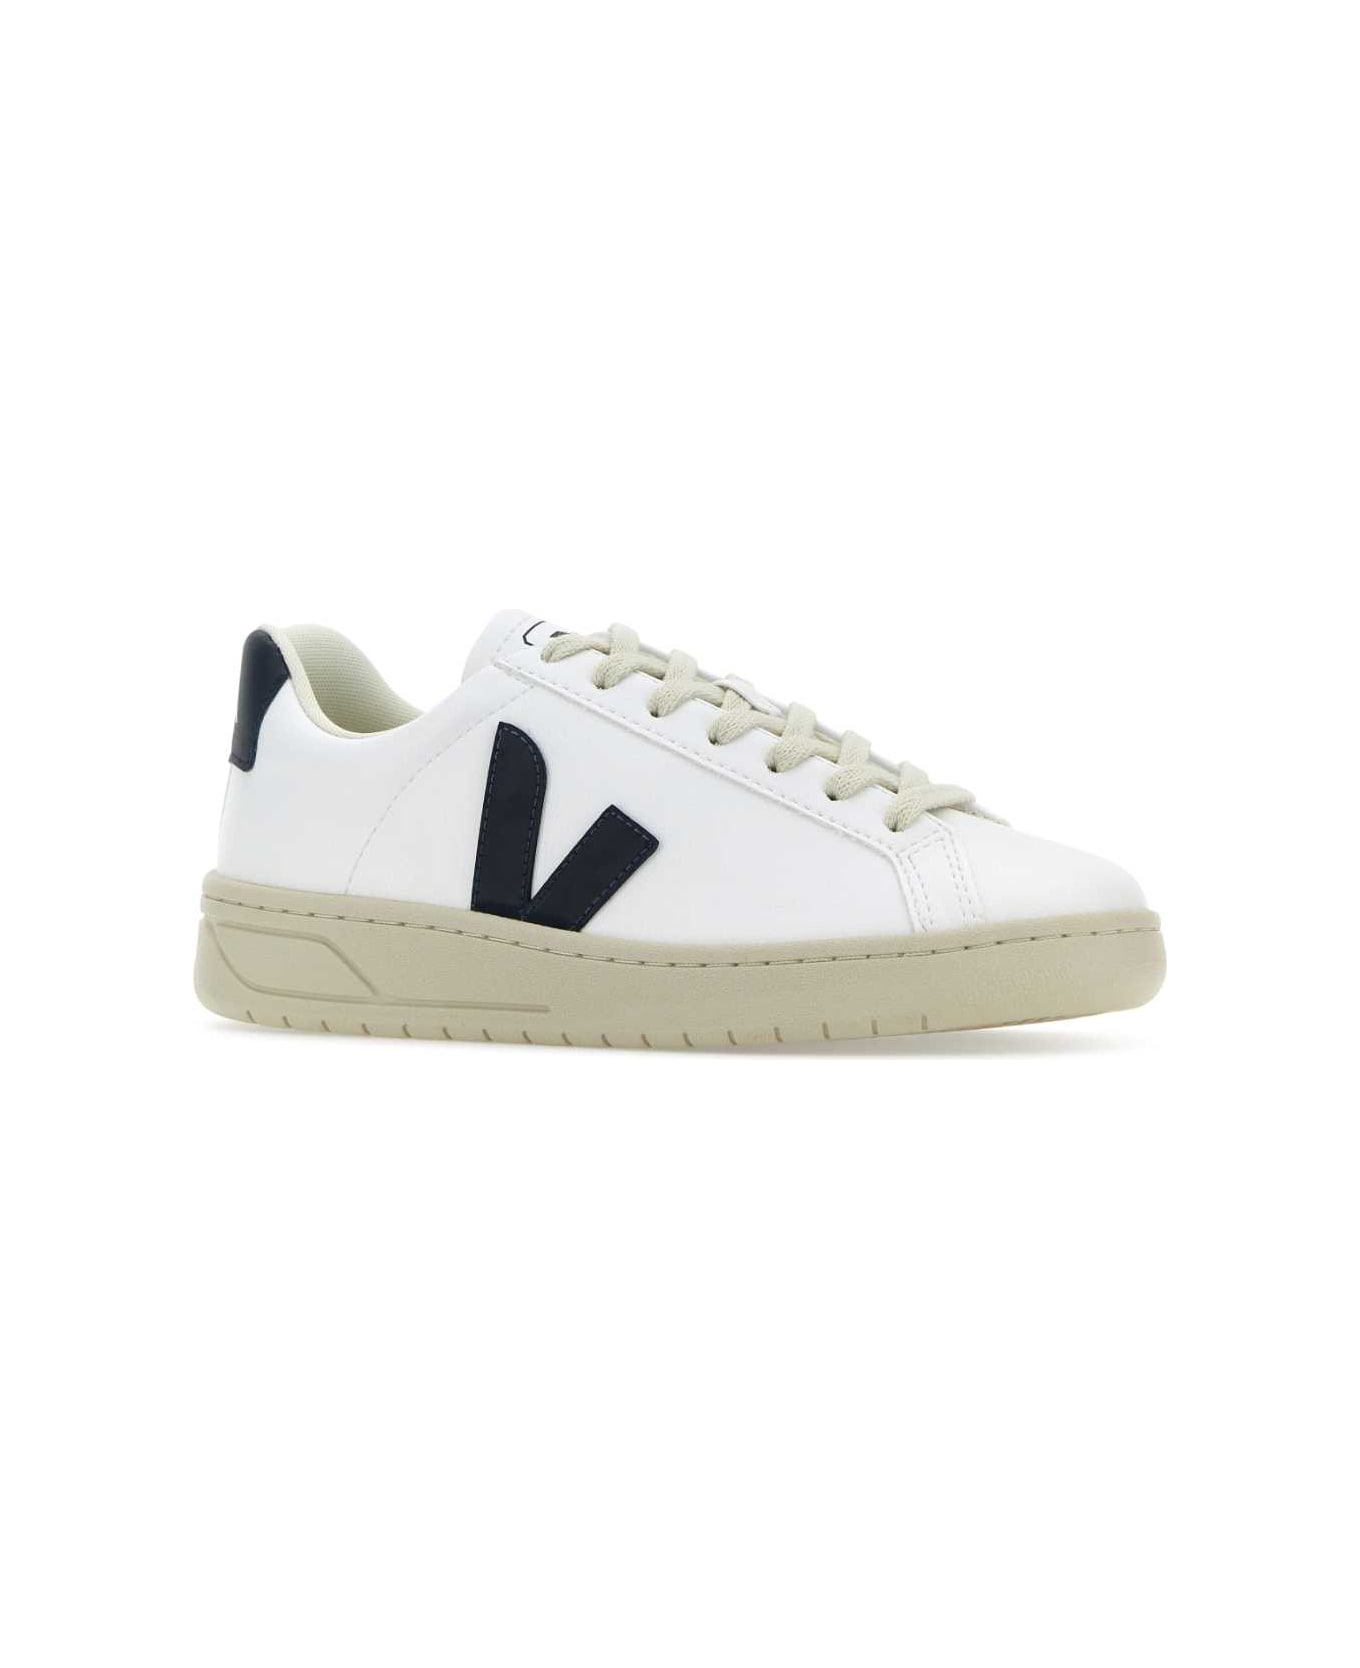 Veja White Synthetic Leather Urca Sneakers - WHITENAUTICO